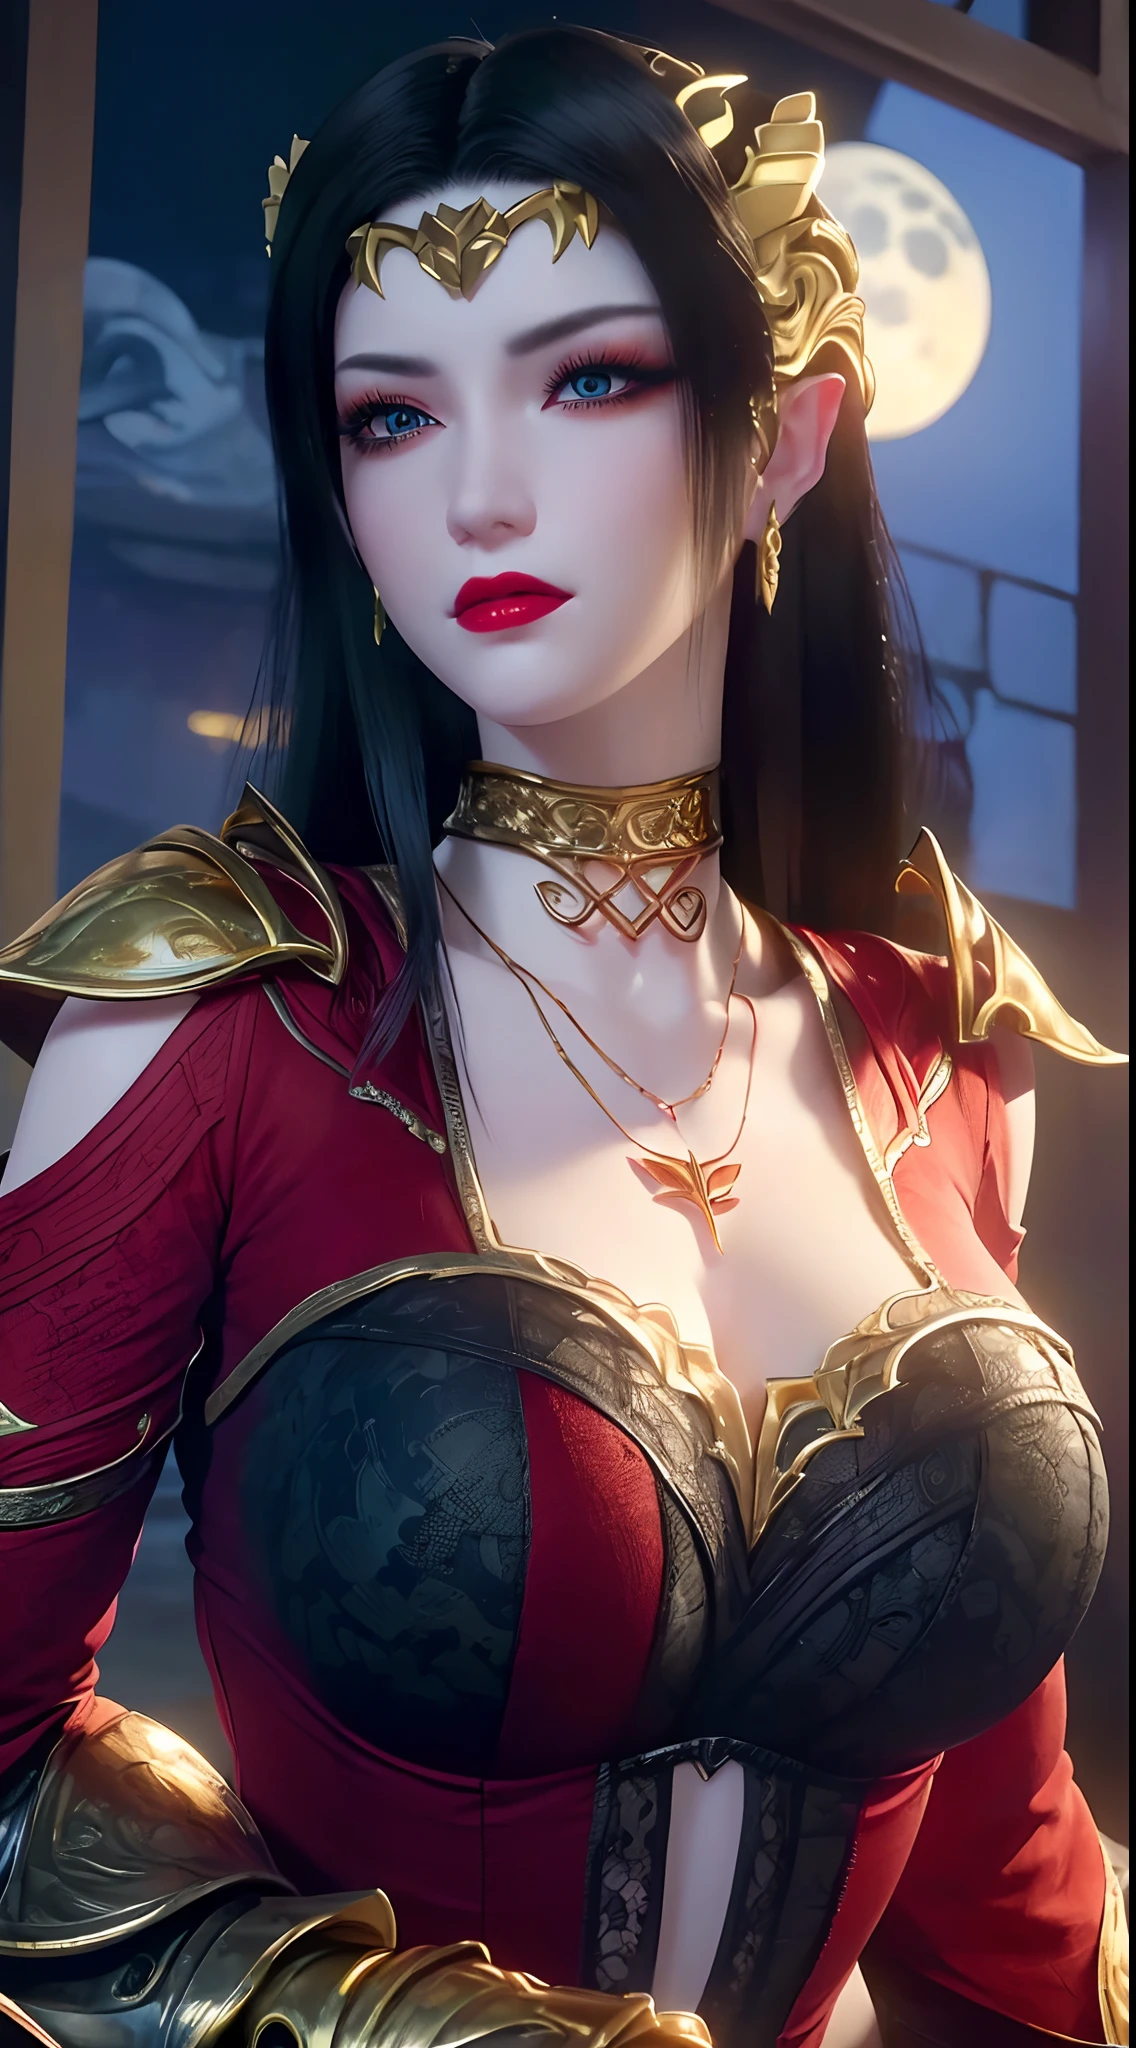 1 rainhas extremamente bonitas,((vestindo armadura vermelha e preta sexy :1.6)), (((Padrões atraentes na camisa:1.6))), ((cabelo preto comprido:1.6)), joias elaboradamente feitas de pedras preciosas e lindos cabelos, ((wearing a 24K gold lace necklace:1.4))), o nobre, Estilo nobre de uma garota extremamente bonita, o rostinho dela é super fofo, O rosto dela é muito bonito, sobrancelhas finas, rosto lindo impecável, ((pupilas dos olhos roxos: 0.8)), Lindos olhos, ((olhos azuis platinados: 1.6)), (((olhos bem abertos:1.6))), bela maquiagem e cílios detalhados no cabelo, maquiagem fumegante para os olhos, Nariz alto, Brincos, lábios vermelhos, ((boca fechada: 1.5)) bonitos lábios, mãos finas, coxas mais lindas, ((braços abertos para os lados: 1.5)), rosto rosado, Rosto limpo, rosto lindo impecável, pele branca e lisa, (seios grandes: 1.5)), ((seios altos: 1.6)), seios apertados, Lindo decote, (((seios grandes and super round: 1.8))), ((super seios apertados: 1.7)) , lindos seios, corpo perfeito, braços traseiros, Peito para fora, meias finas de malha preta com acabamento em renda preta, Foto 8k, super alta qualidade, Super Realista, pixels super 10x, óptico, estúdio brilhante, Bordas brilhantes, dual-tone Iluminação, (pele de alto detalhe:1.2), super 8k, soft Iluminação, alta qualidade, volumetric Iluminação, fotorrealista, fotorrealista high resolution, Iluminação, melhor foto, 4K, Qualidade 8k, Efeito de desfoque, suave e afiado, 10 x pixels, ((mar e luar no fundo da noite:1.5)), aurora, raio, super gráficos realistas, gráficos mais realistas, 1 garota, sozinho, Sozinho, Imagem extremamente nítida, Surreal, (((retrato frontal: 1)))."